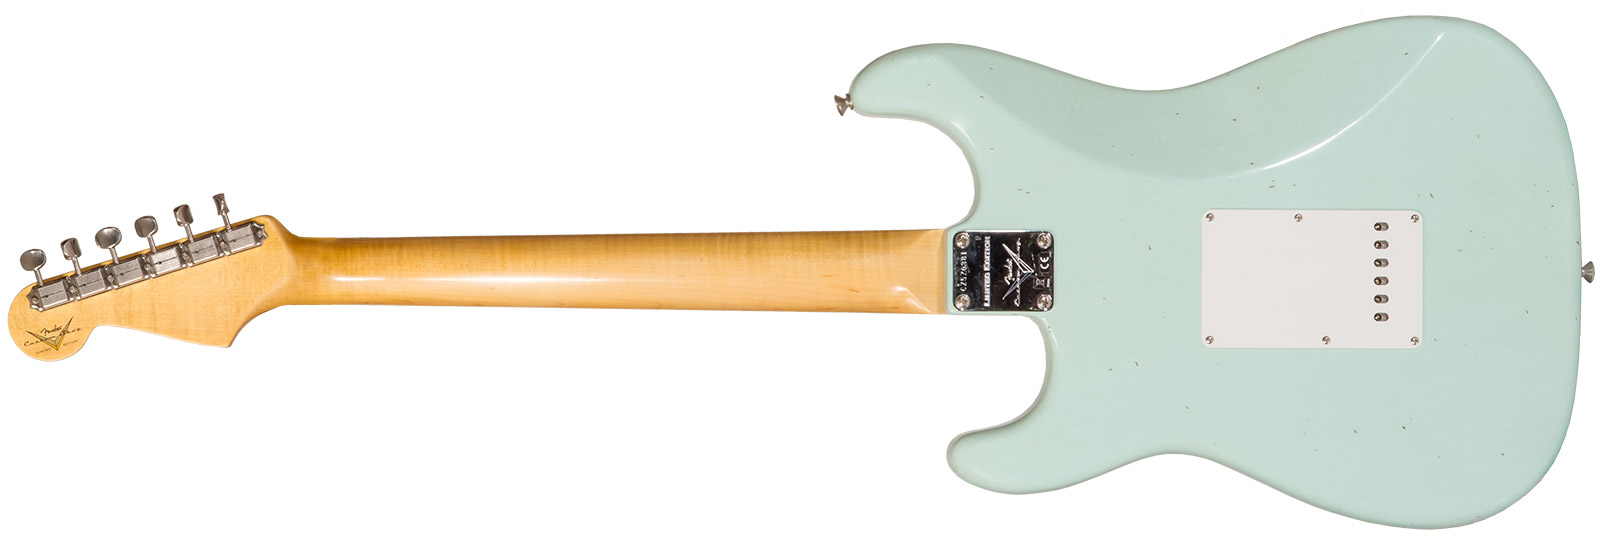 Fender Custom Shop Strat 1964 3s Trem Rw #cz570381 - Journeyman Relic Aged Surf Green - Elektrische gitaar in Str-vorm - Variation 1